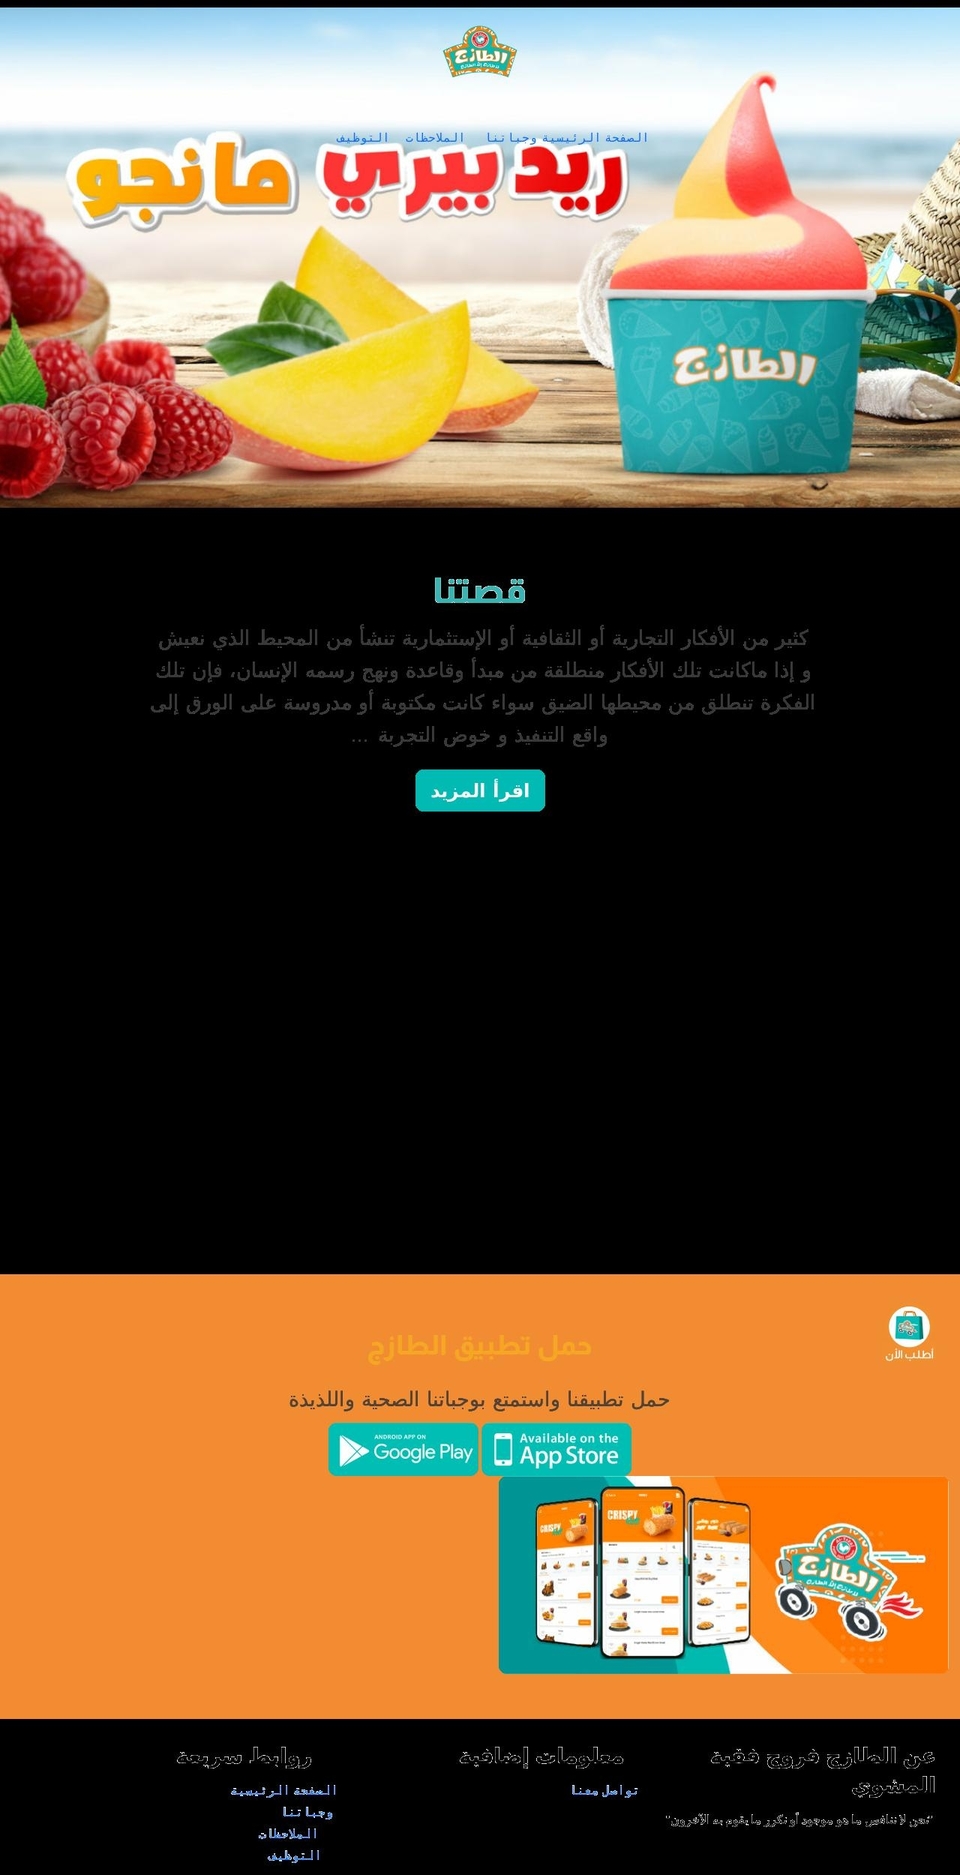 taza.com.sa shopify website screenshot